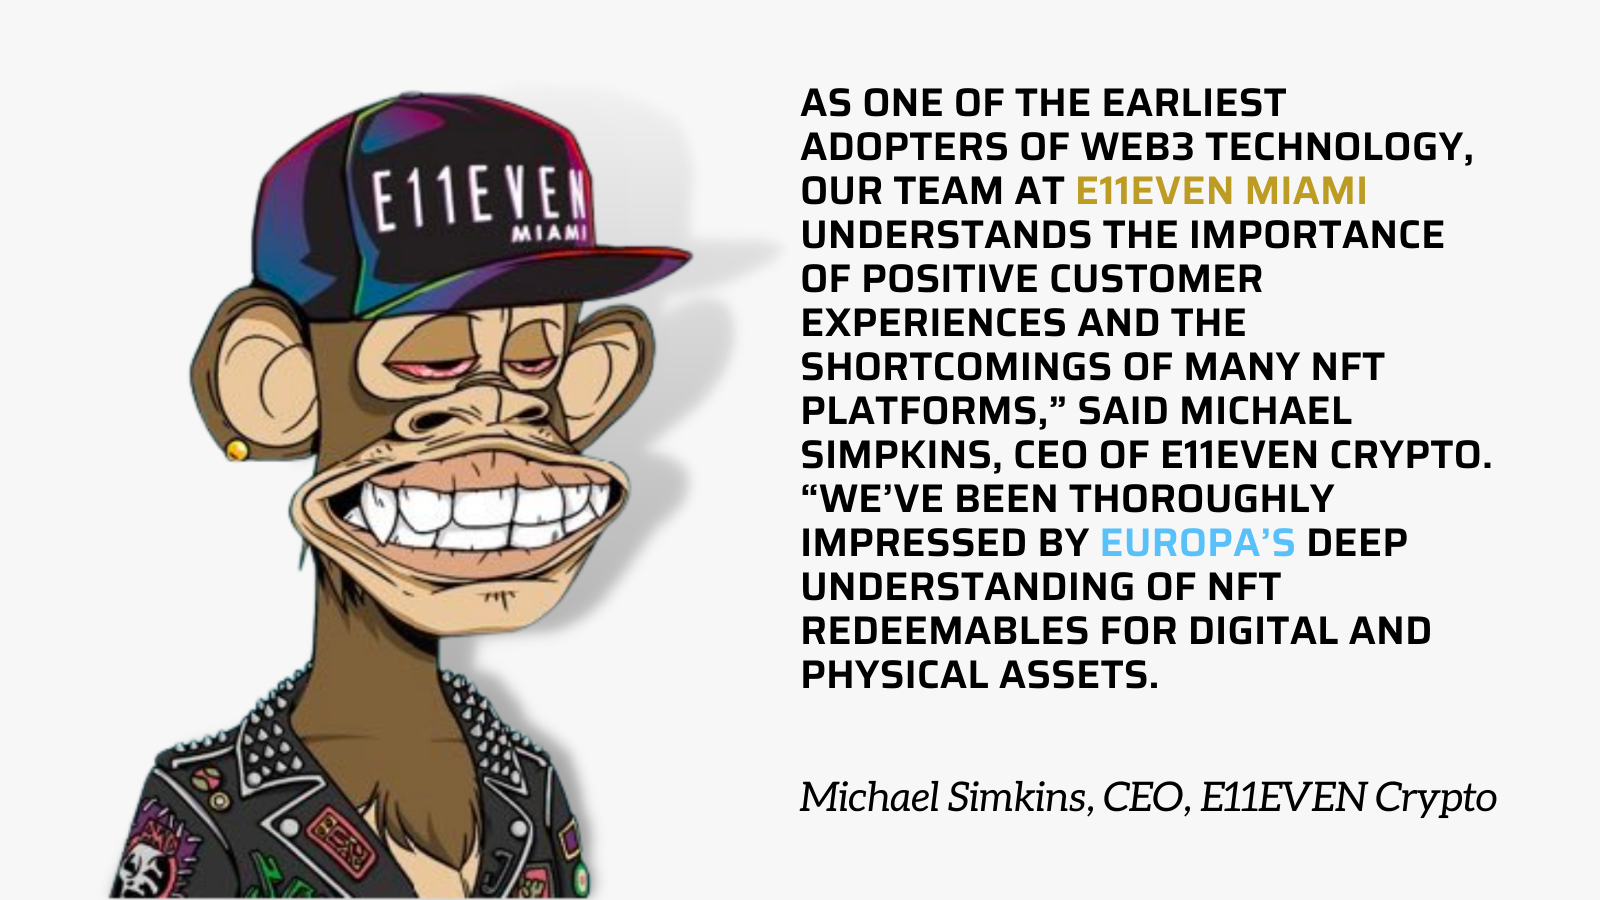 Michael Simkins, CEO of E11EVEN Crypto